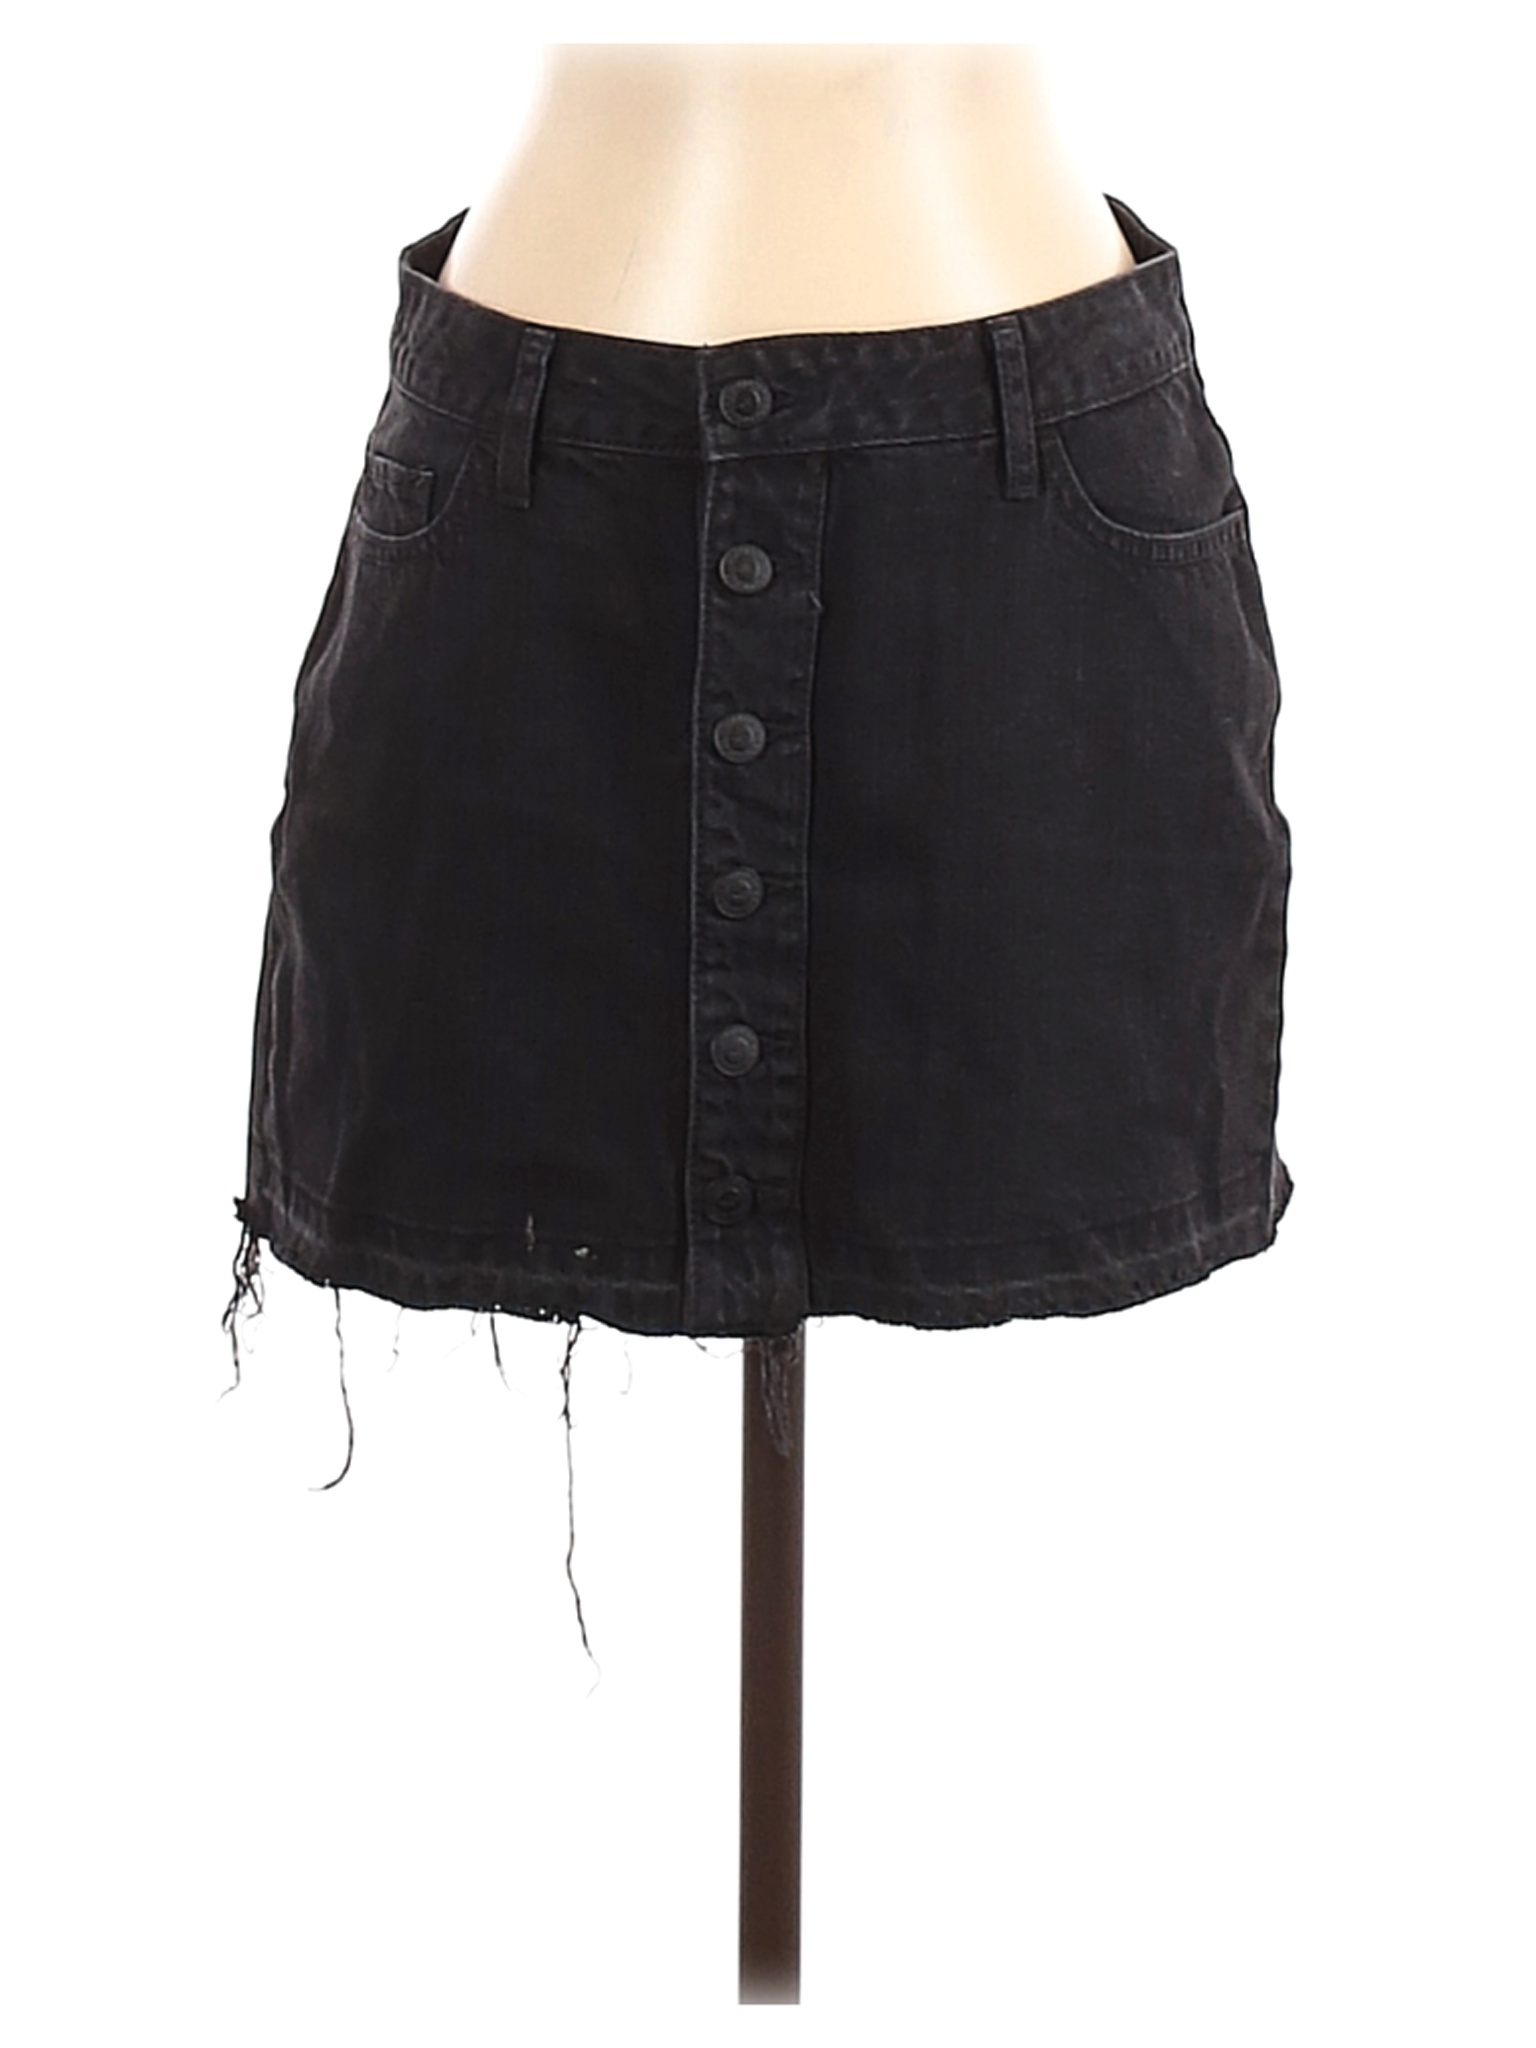 Hollister Women Black Denim Skirt 3 | eBay